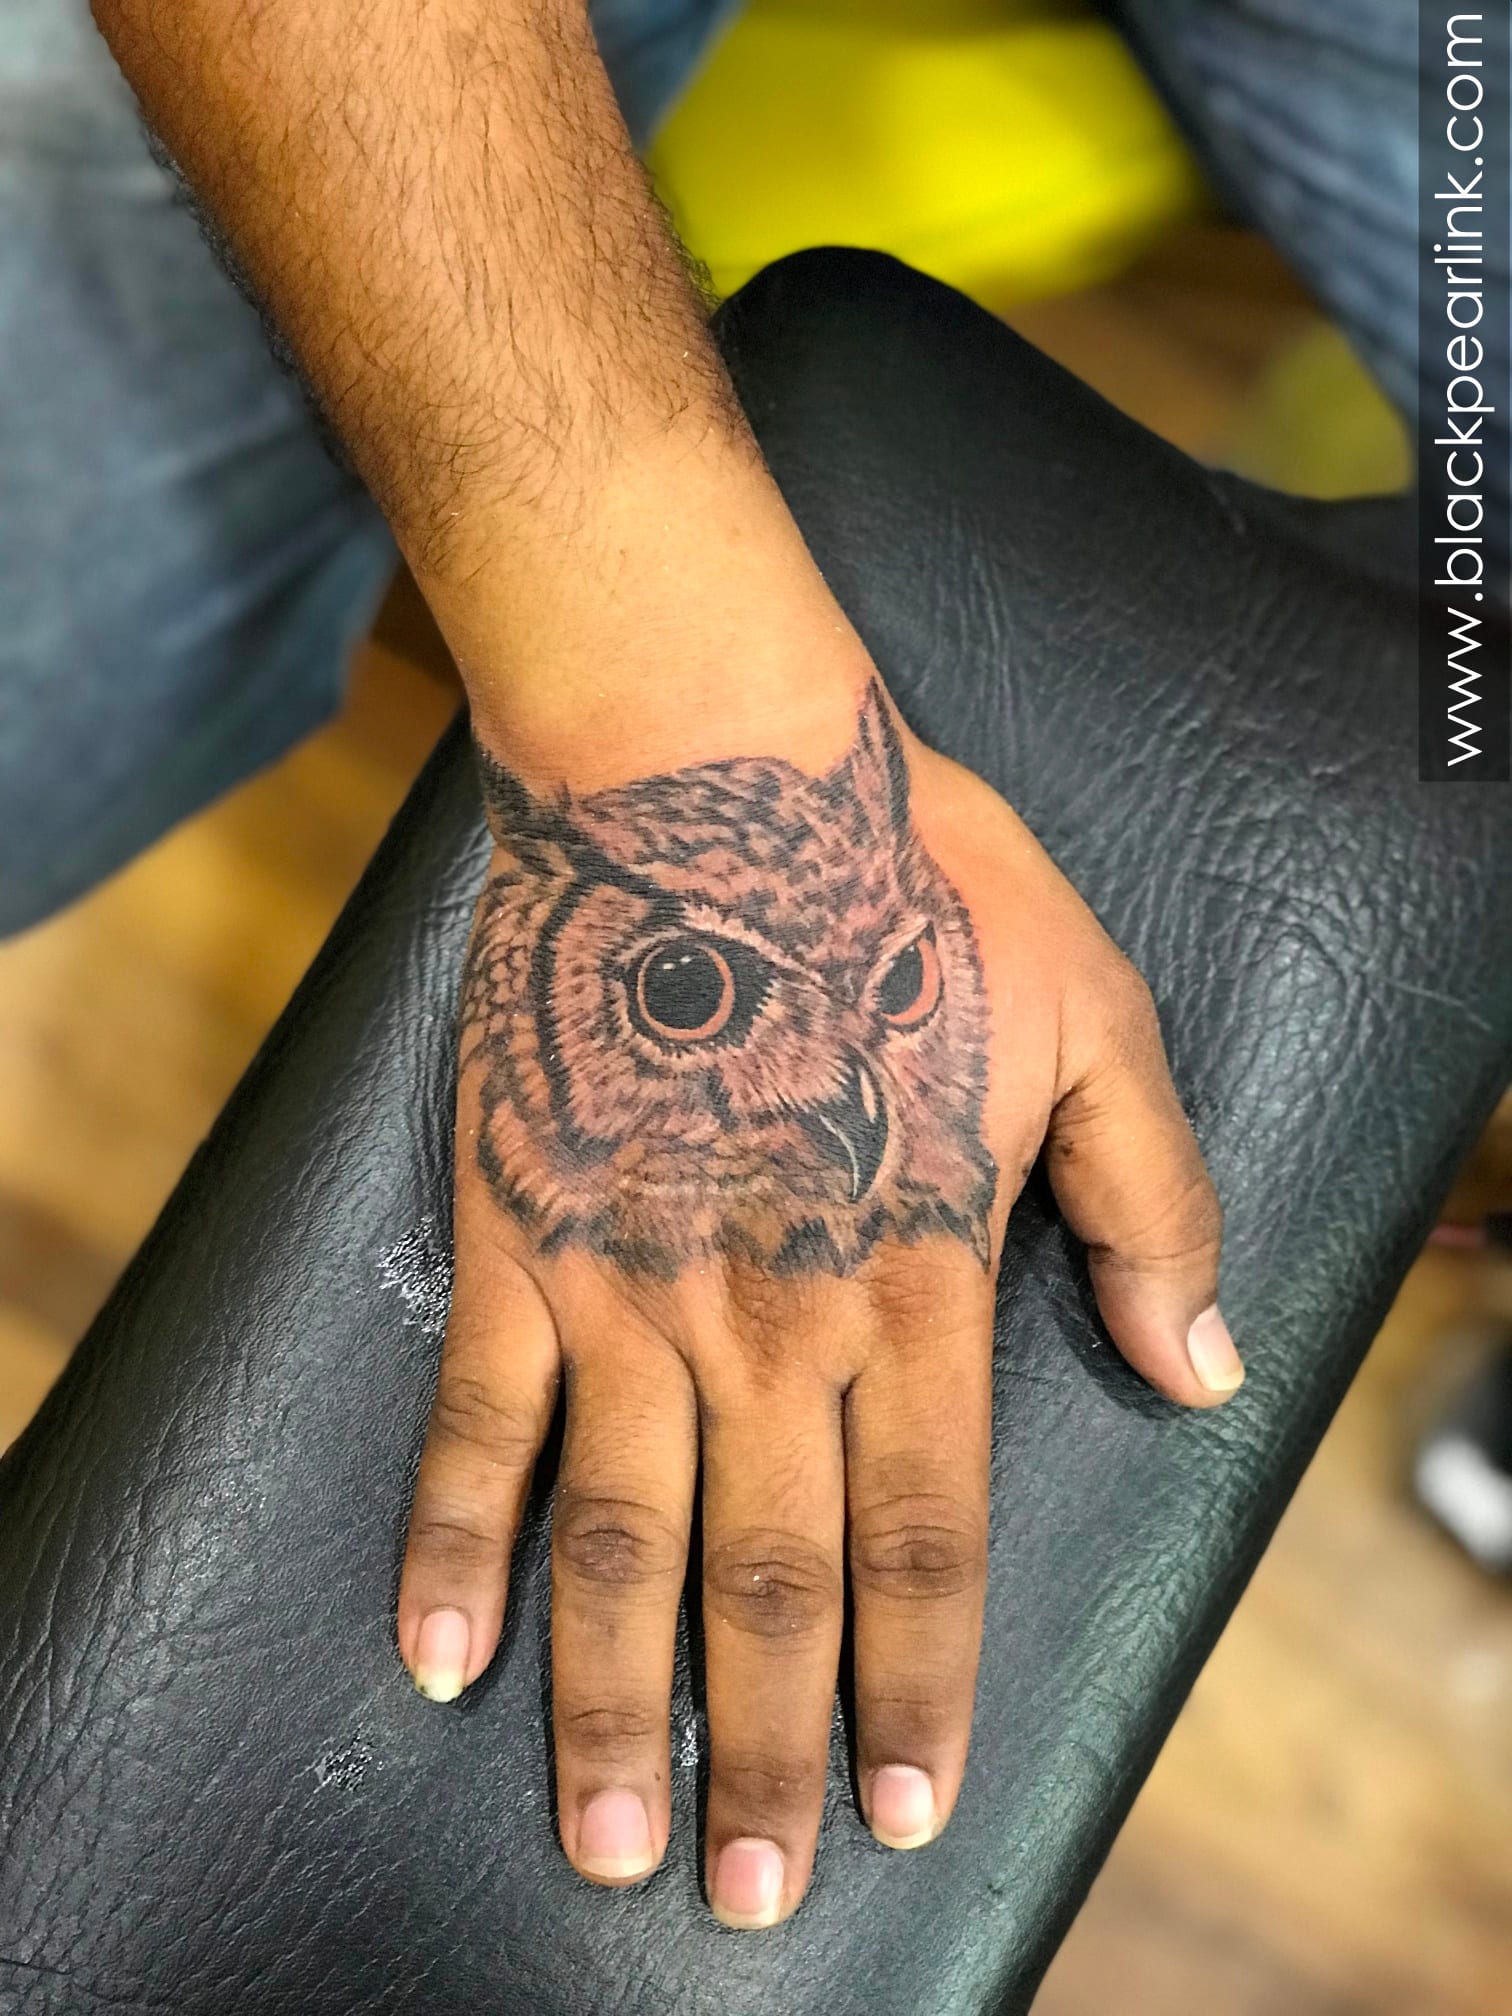 tribal owl tattoos for men